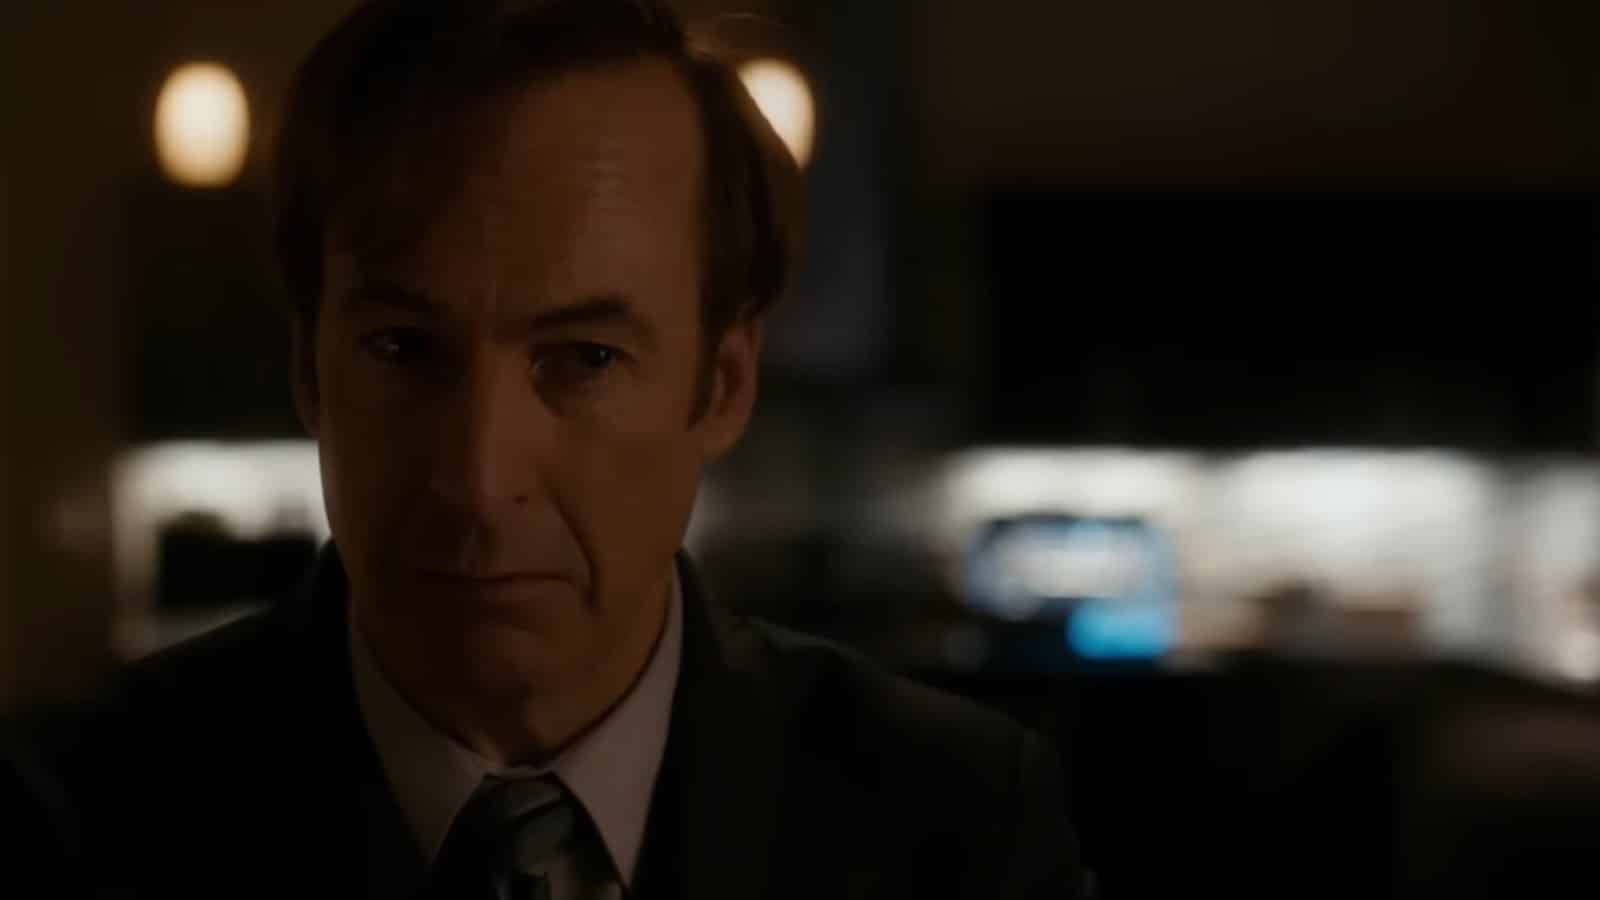 Will 'Better Call Saul' Finally Win an Emmy?